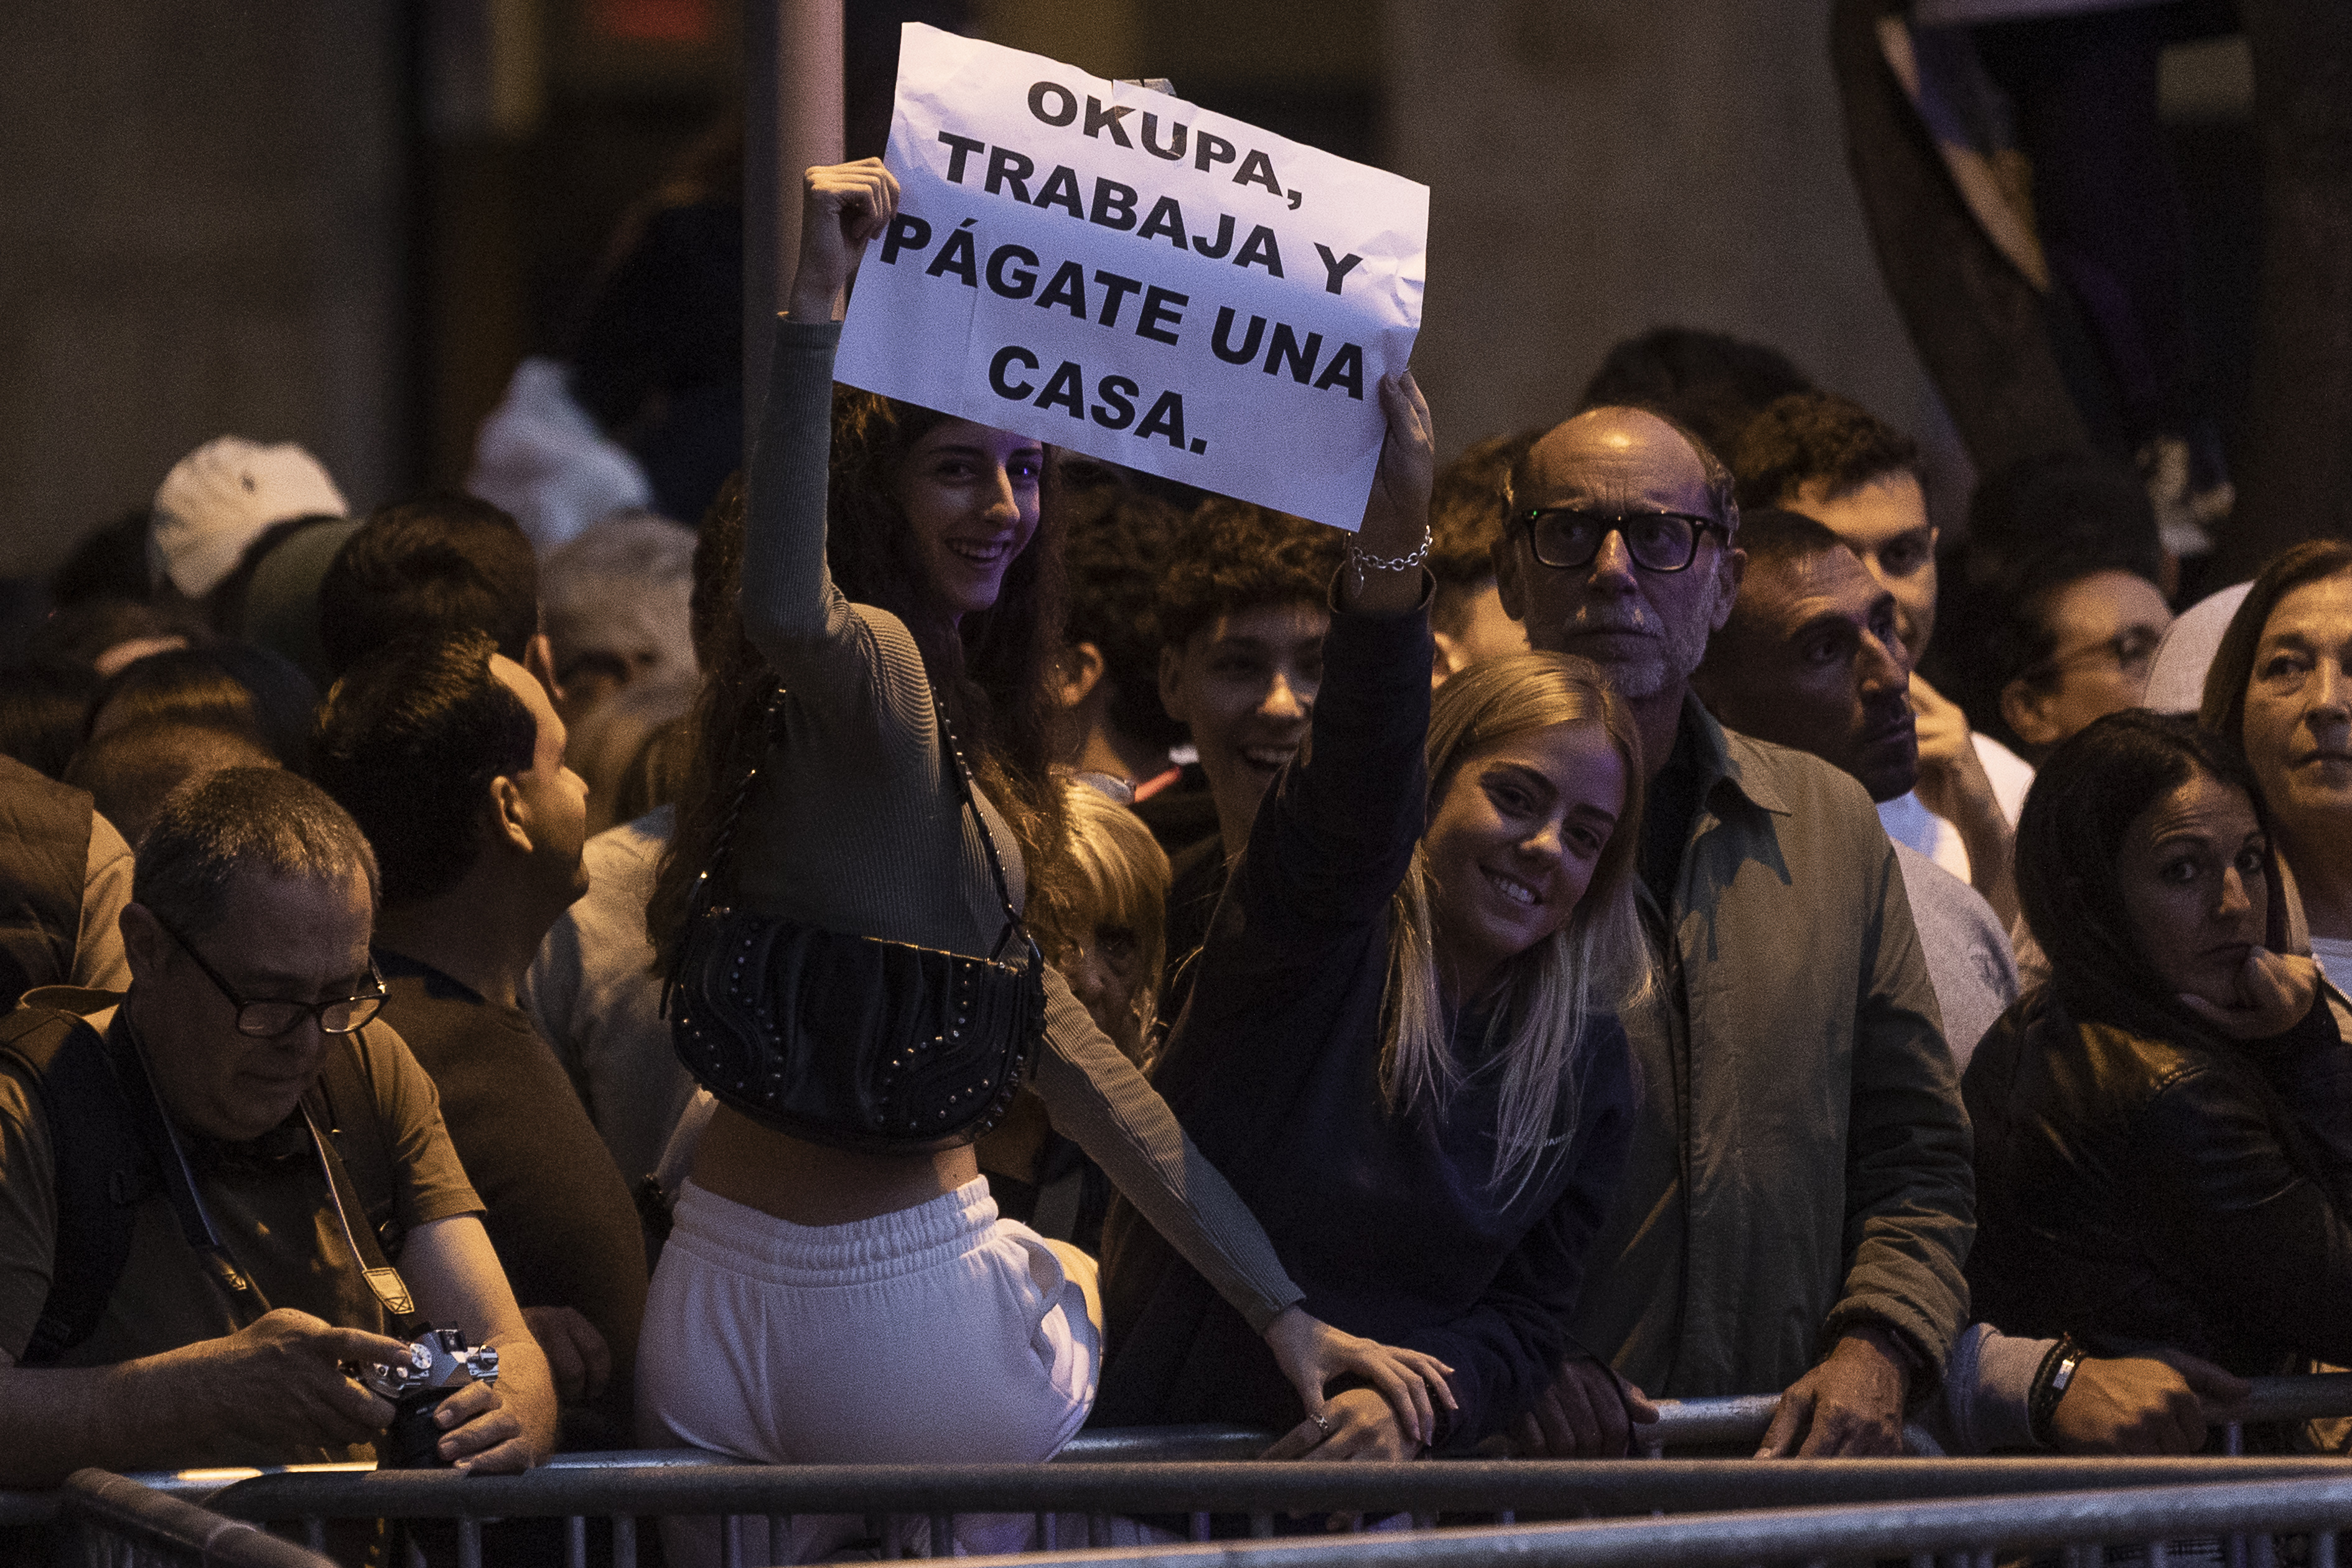 La imagen muestra a varias mujeres jóvenes protestando contra los okupas en la Plaza de la Bonanova.